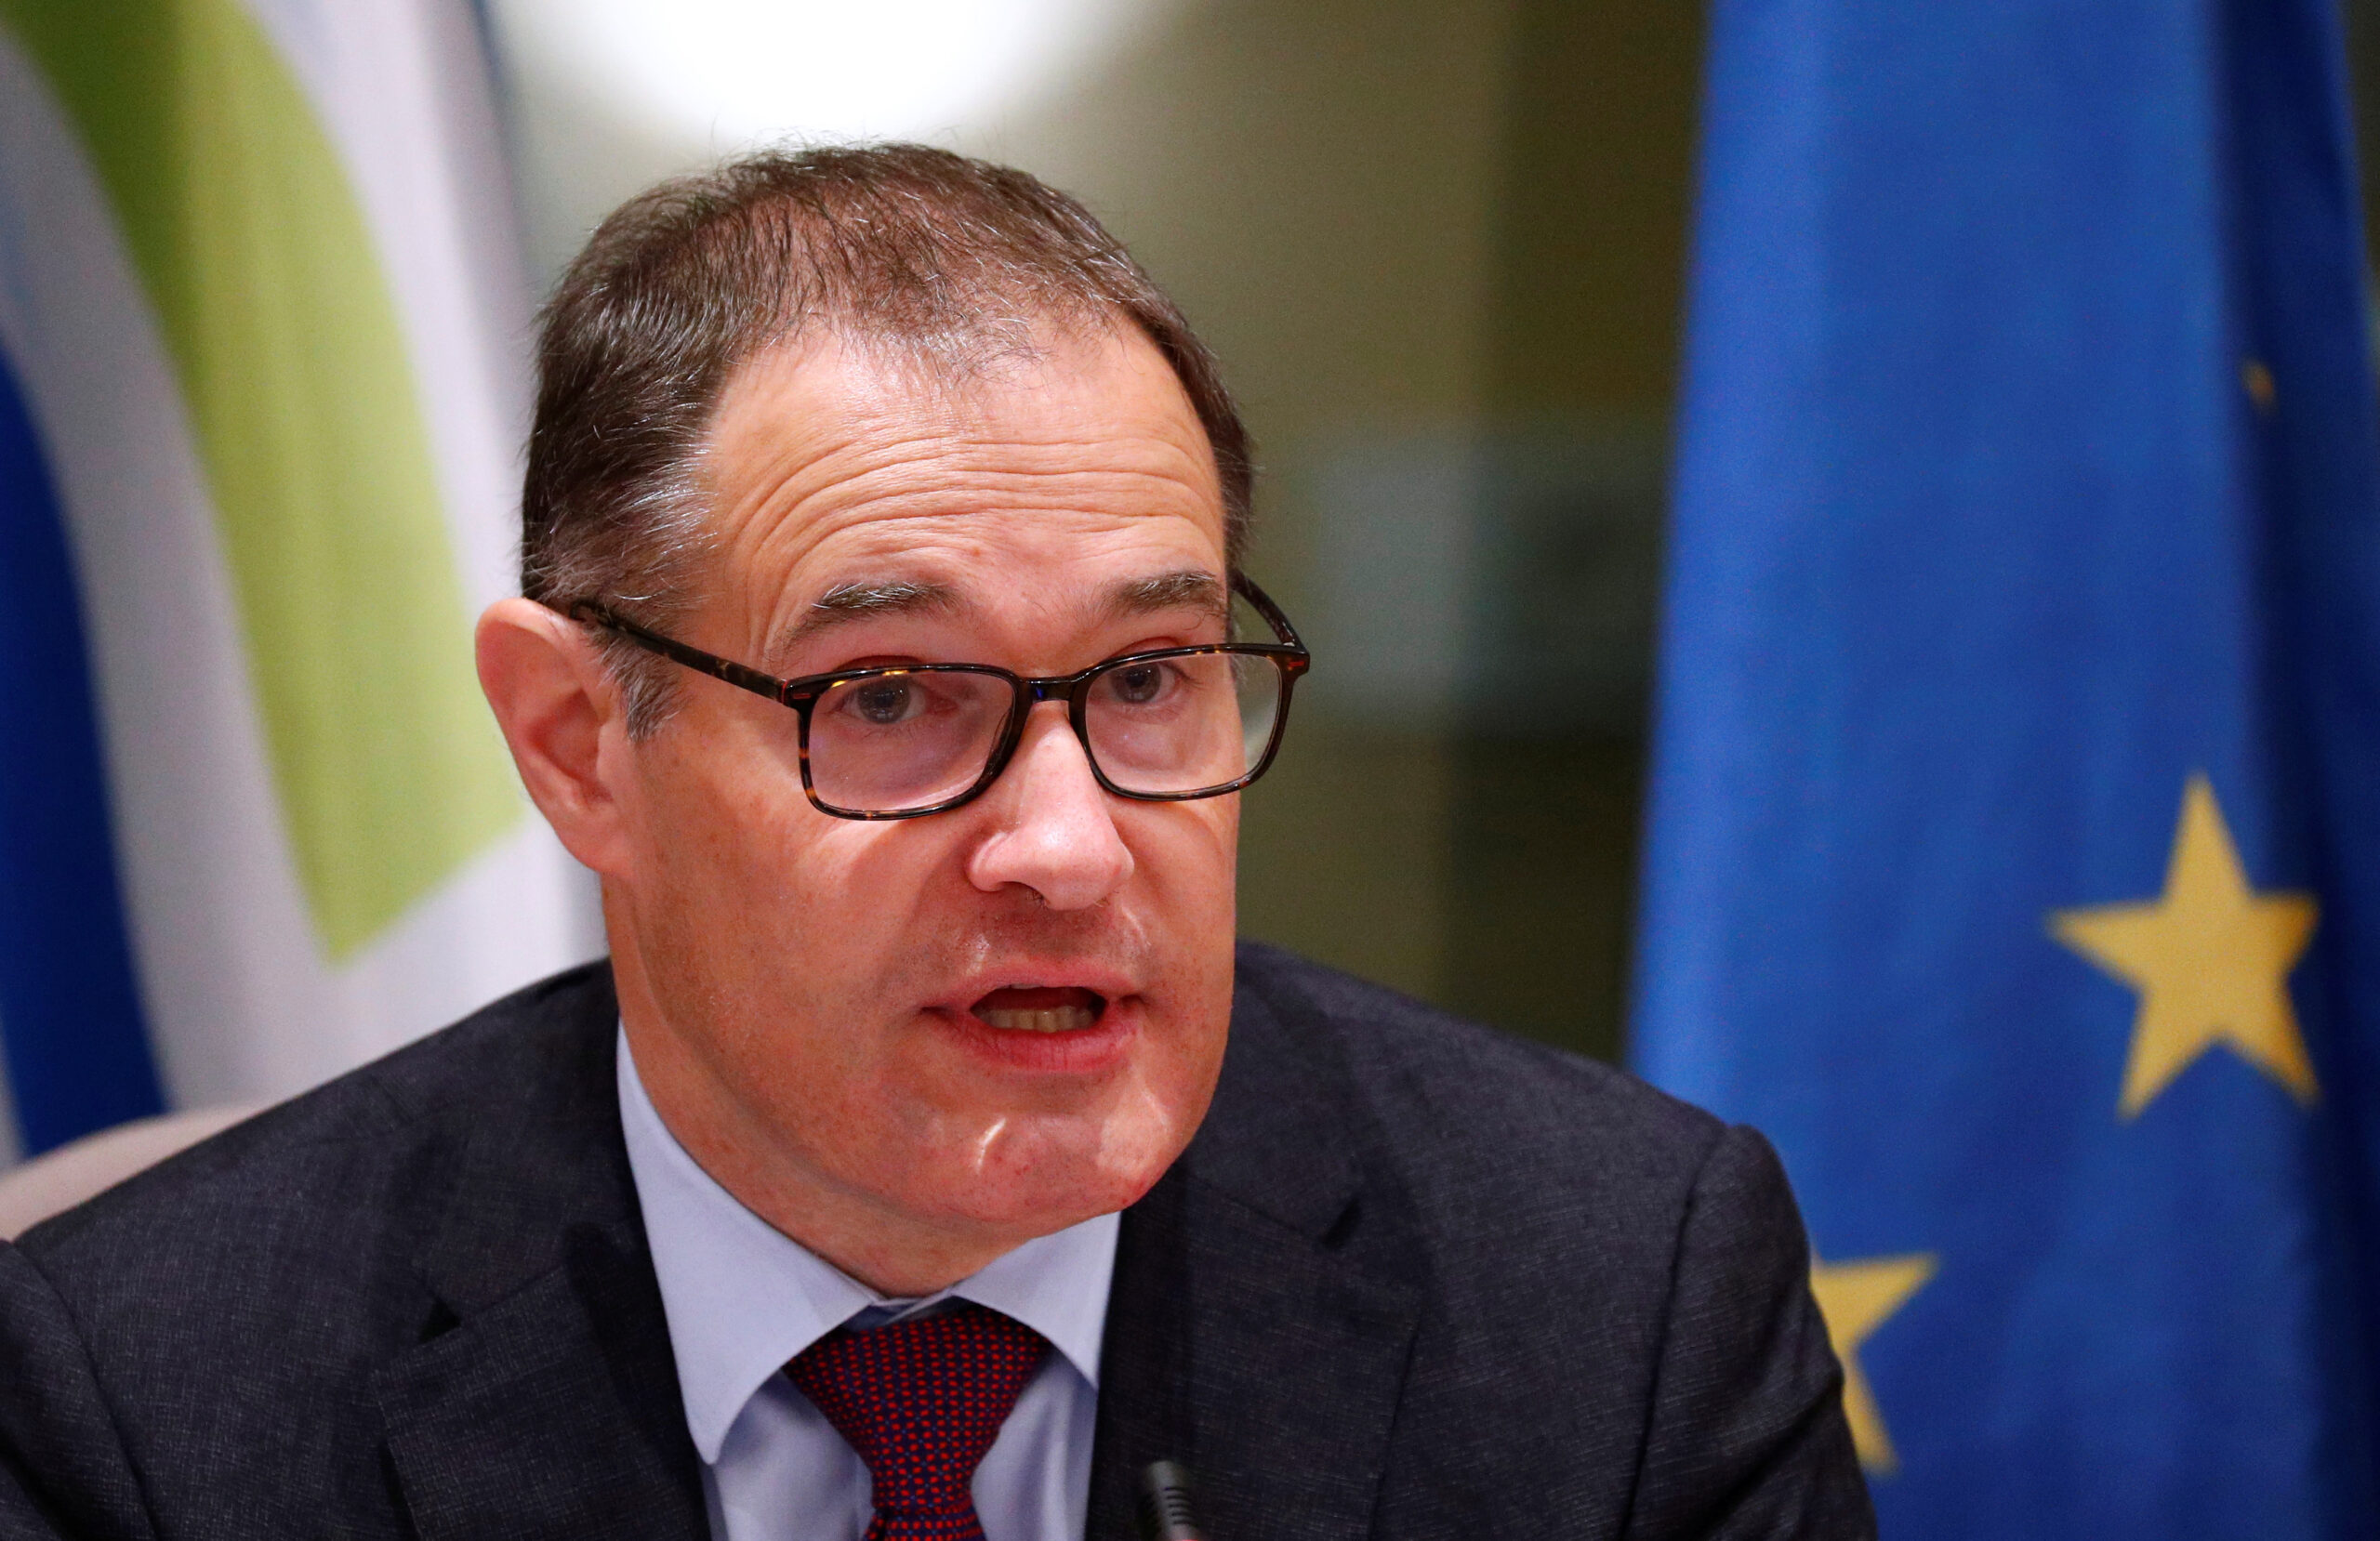 El jefe de Frontex presenta su dimisión por las devoluciones en caliente de migrantes